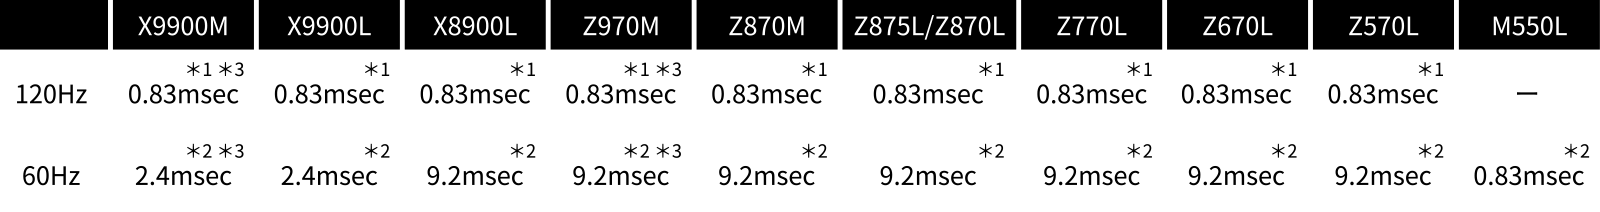 最小遅延速度 0.83msec 比較表